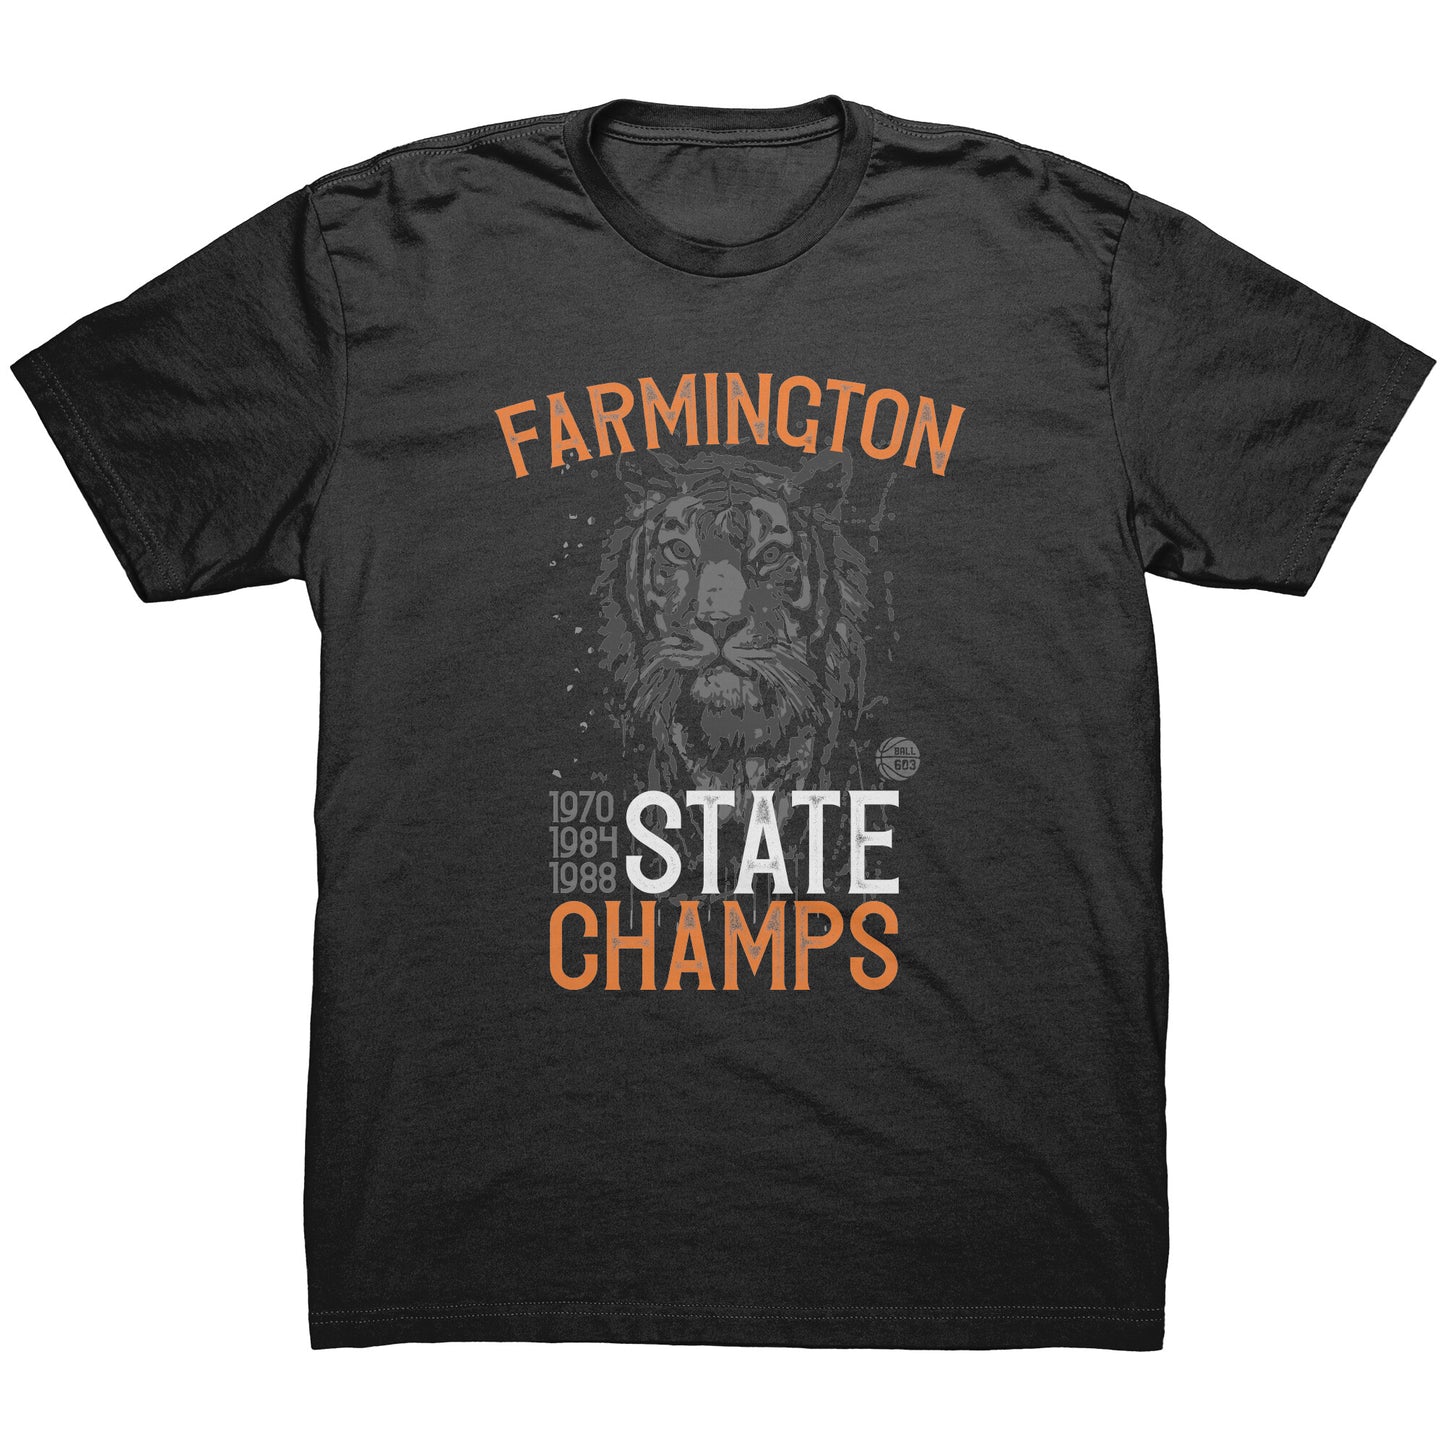 Farmington State Champs (Men's Cut)